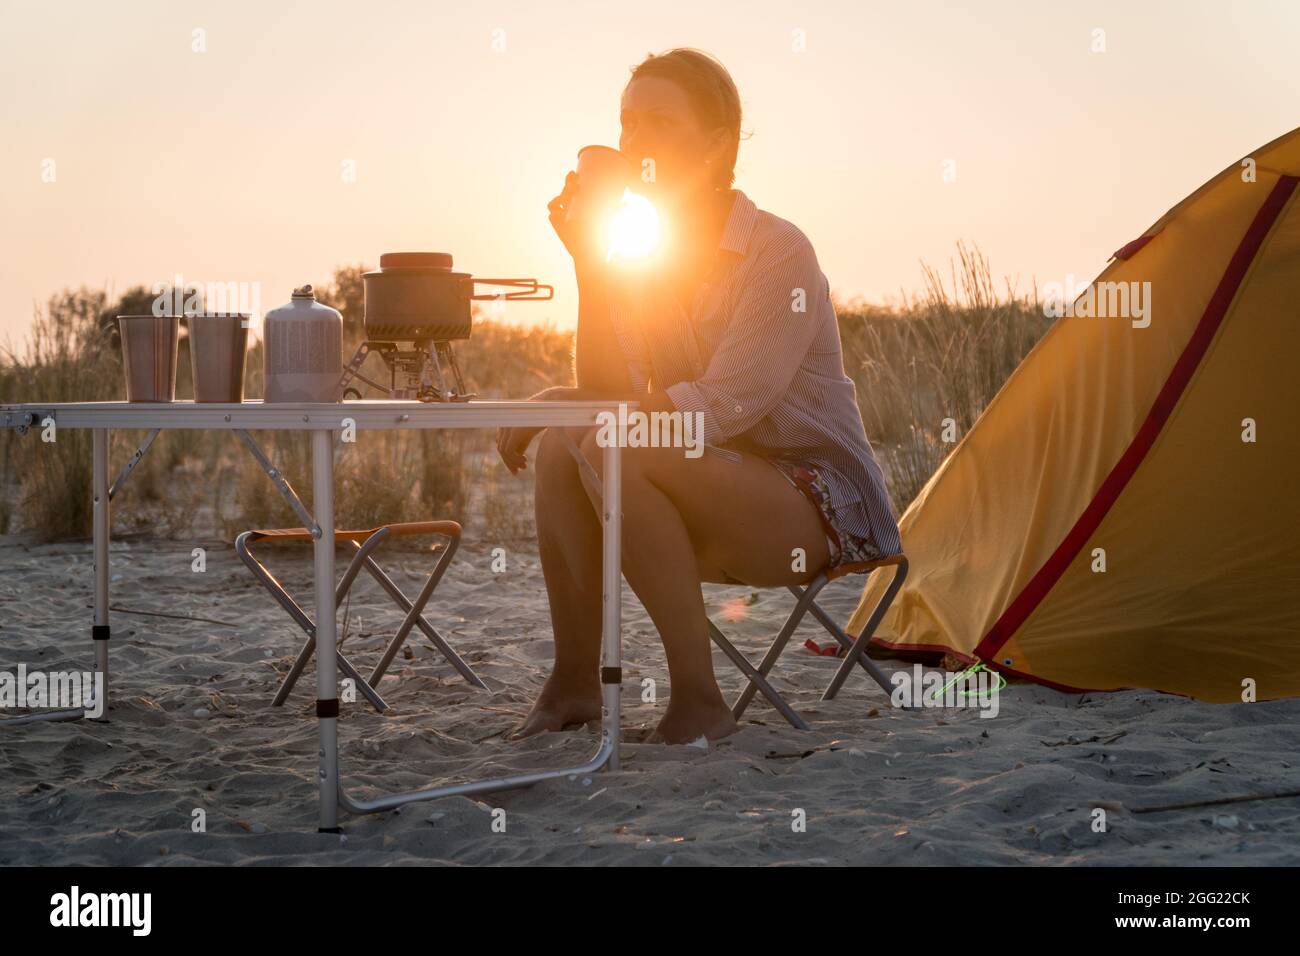 Sonnenuntergang szenische Ansicht der Frau, die Metallglas hält. Faltbares Campinggas-Feuersystem mit einem Topf auf einem Tisch. Wilder Naturtourismus mit Zelt, aktiv lebend Stockfoto